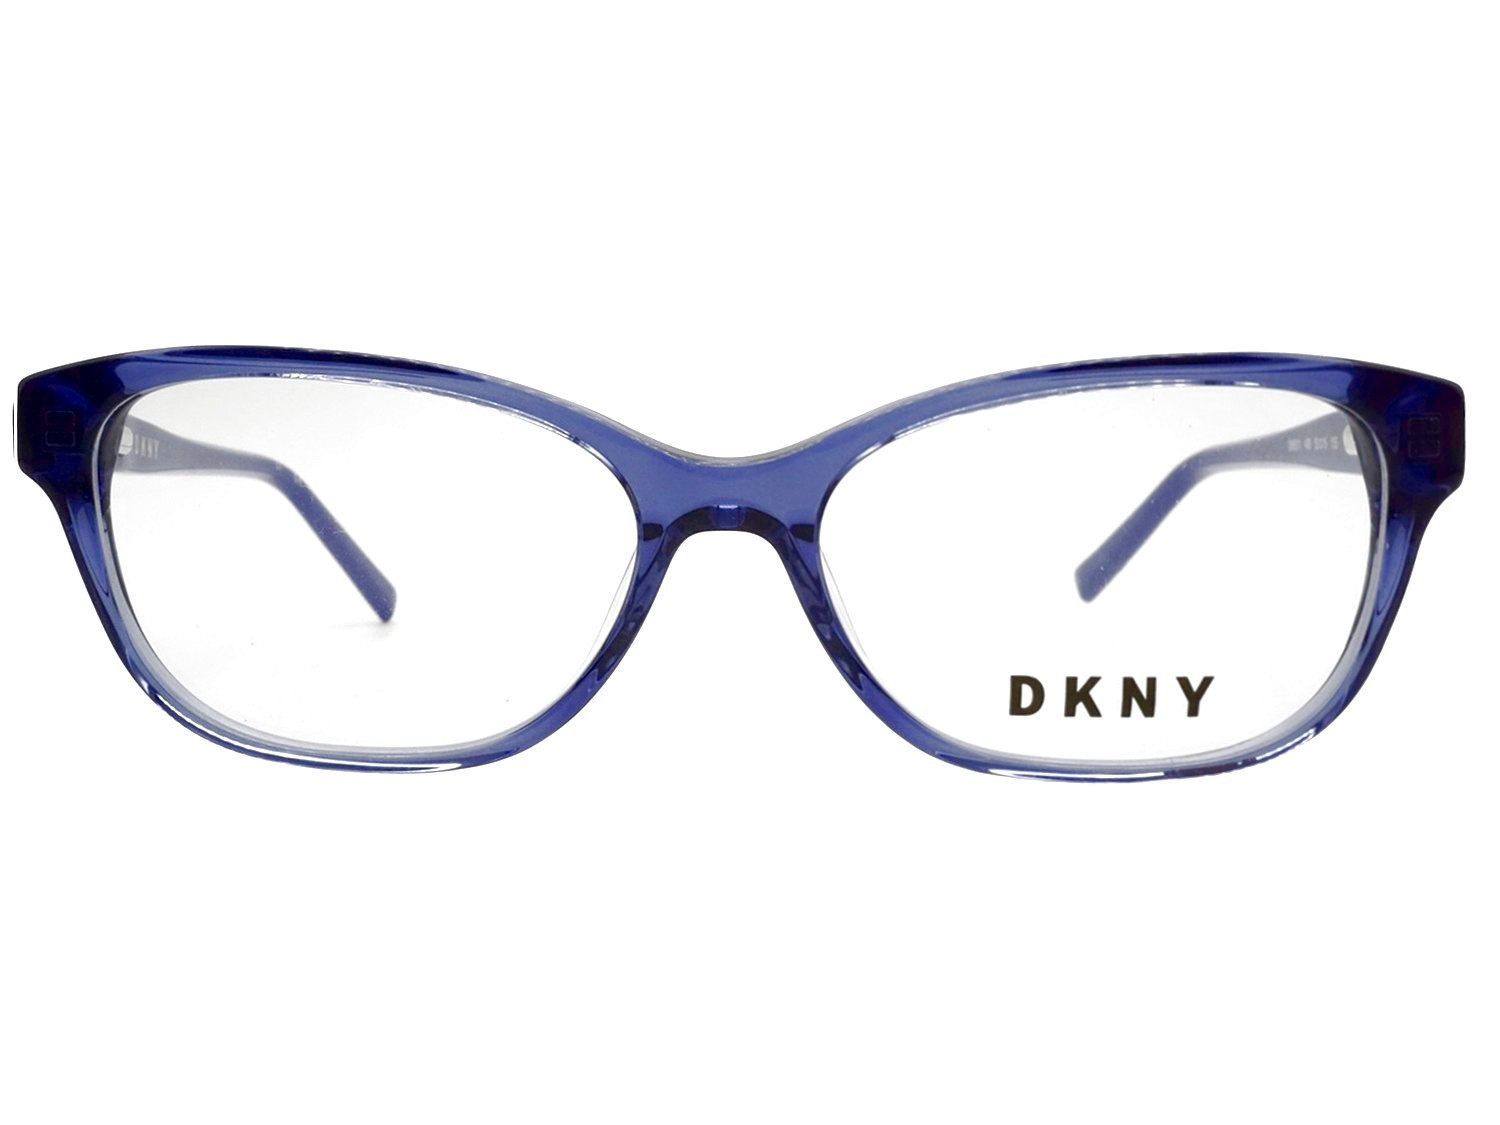 DKNY 5011 400